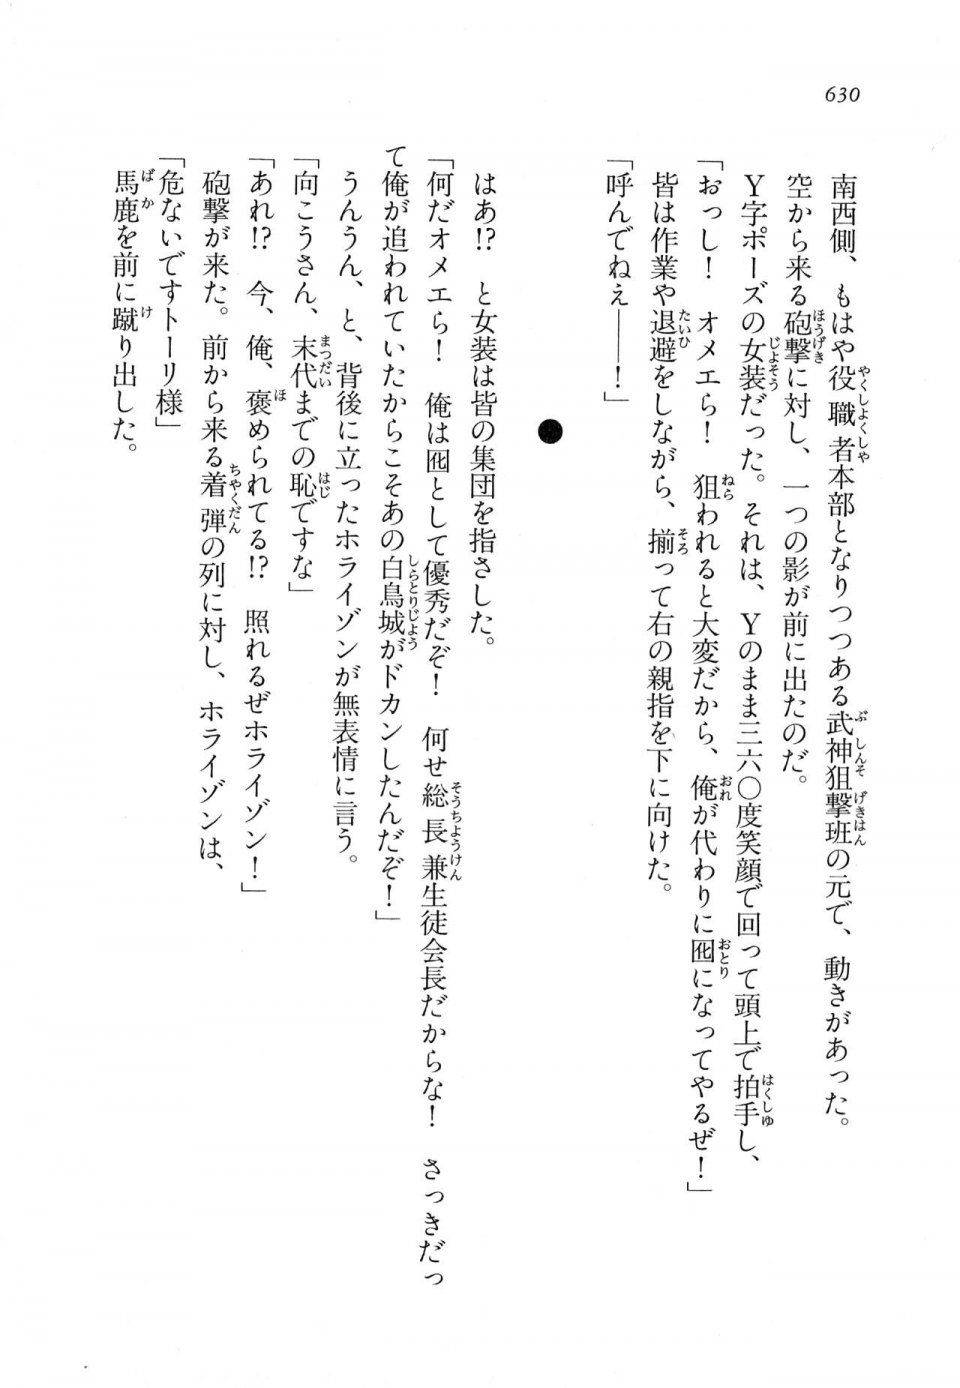 Kyoukai Senjou no Horizon LN Vol 11(5A) - Photo #630